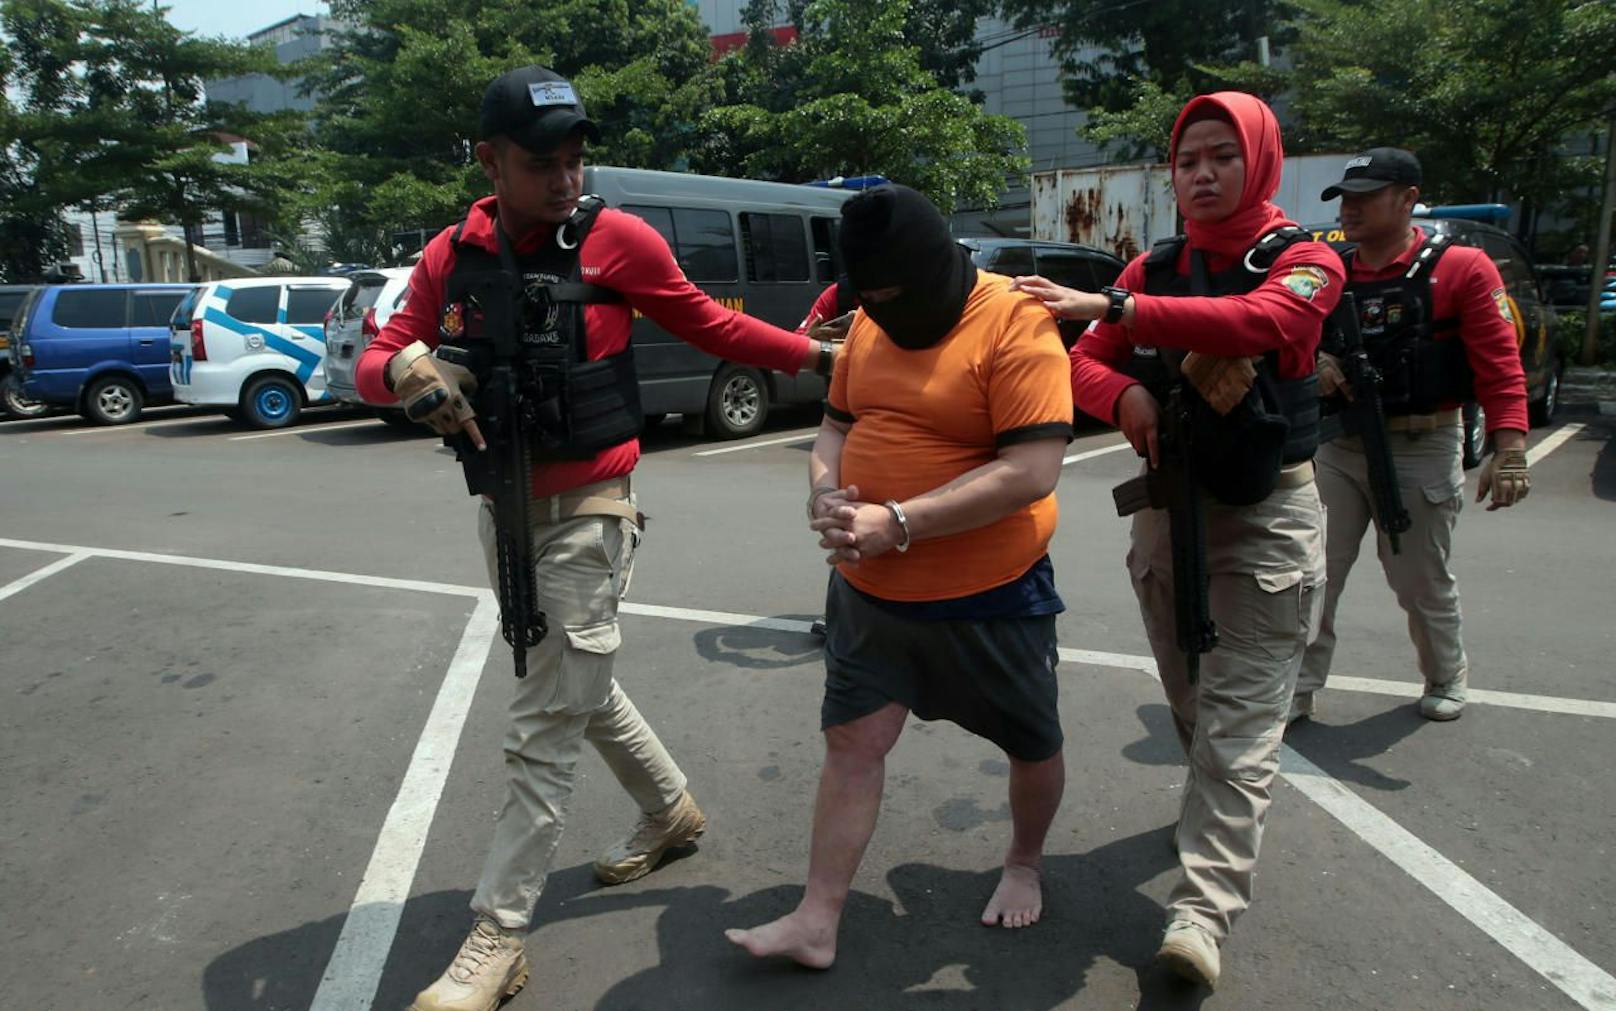 Festnahme: Polizisten haben in Jakarta einen Verdächtigen verhaftet, der gepanschten Schnaps verkauft haben soll. Durch Billigschnaps starben über 100 Menschen in Indonesien. 